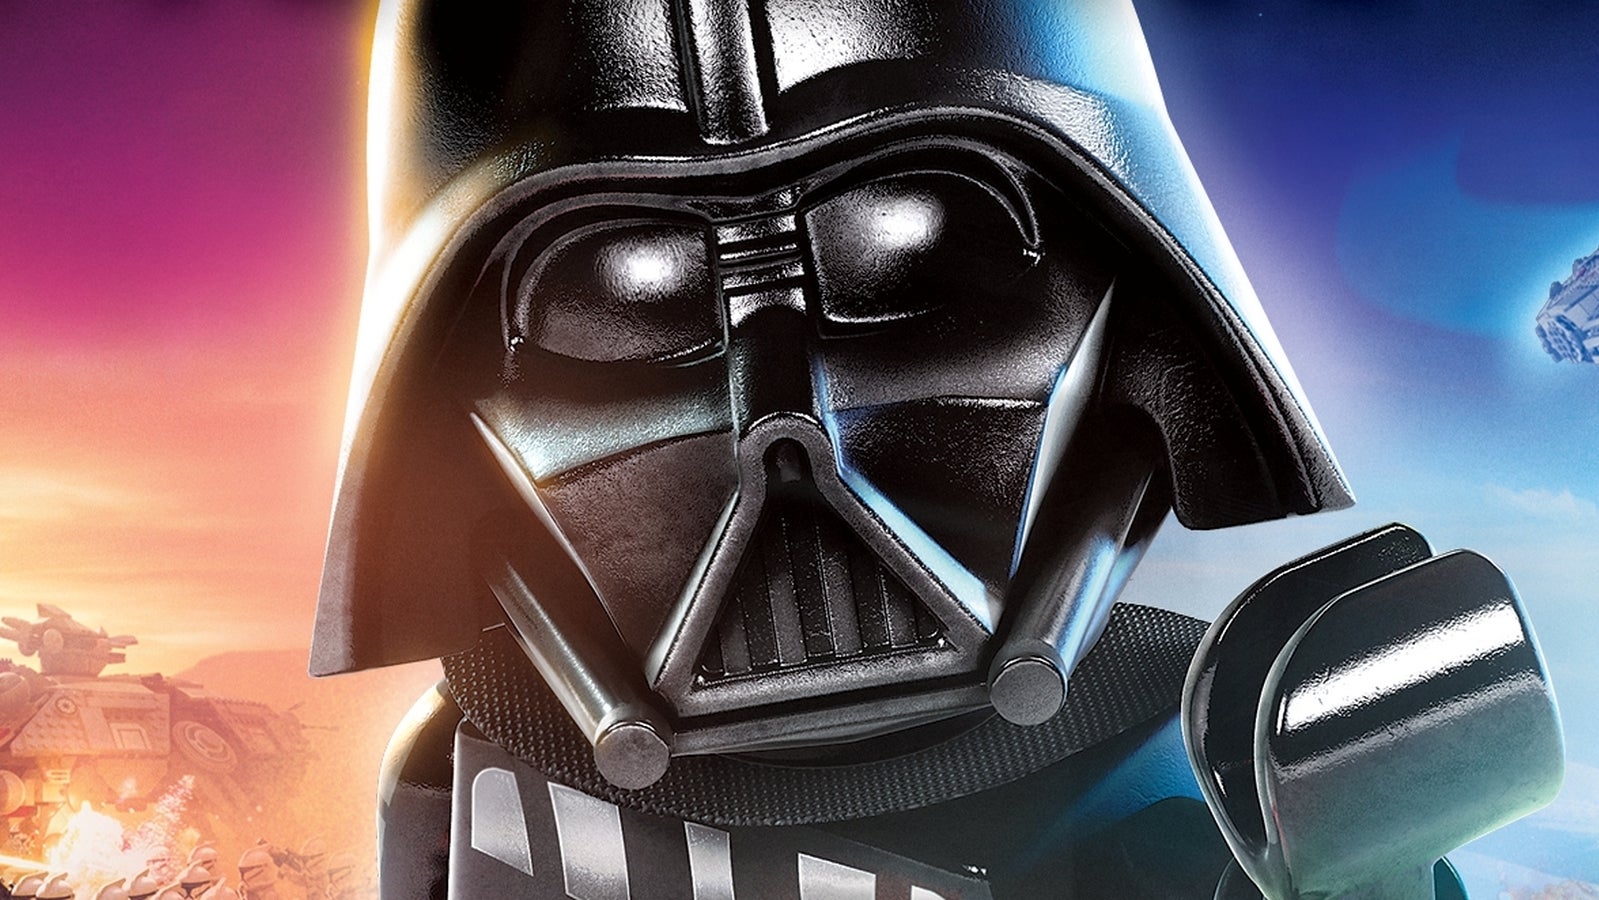 Immagine di Lego Star Wars: The Skywalker Saga avrà una marea di contenuti tra pianeti, personaggi giocabili e non solo